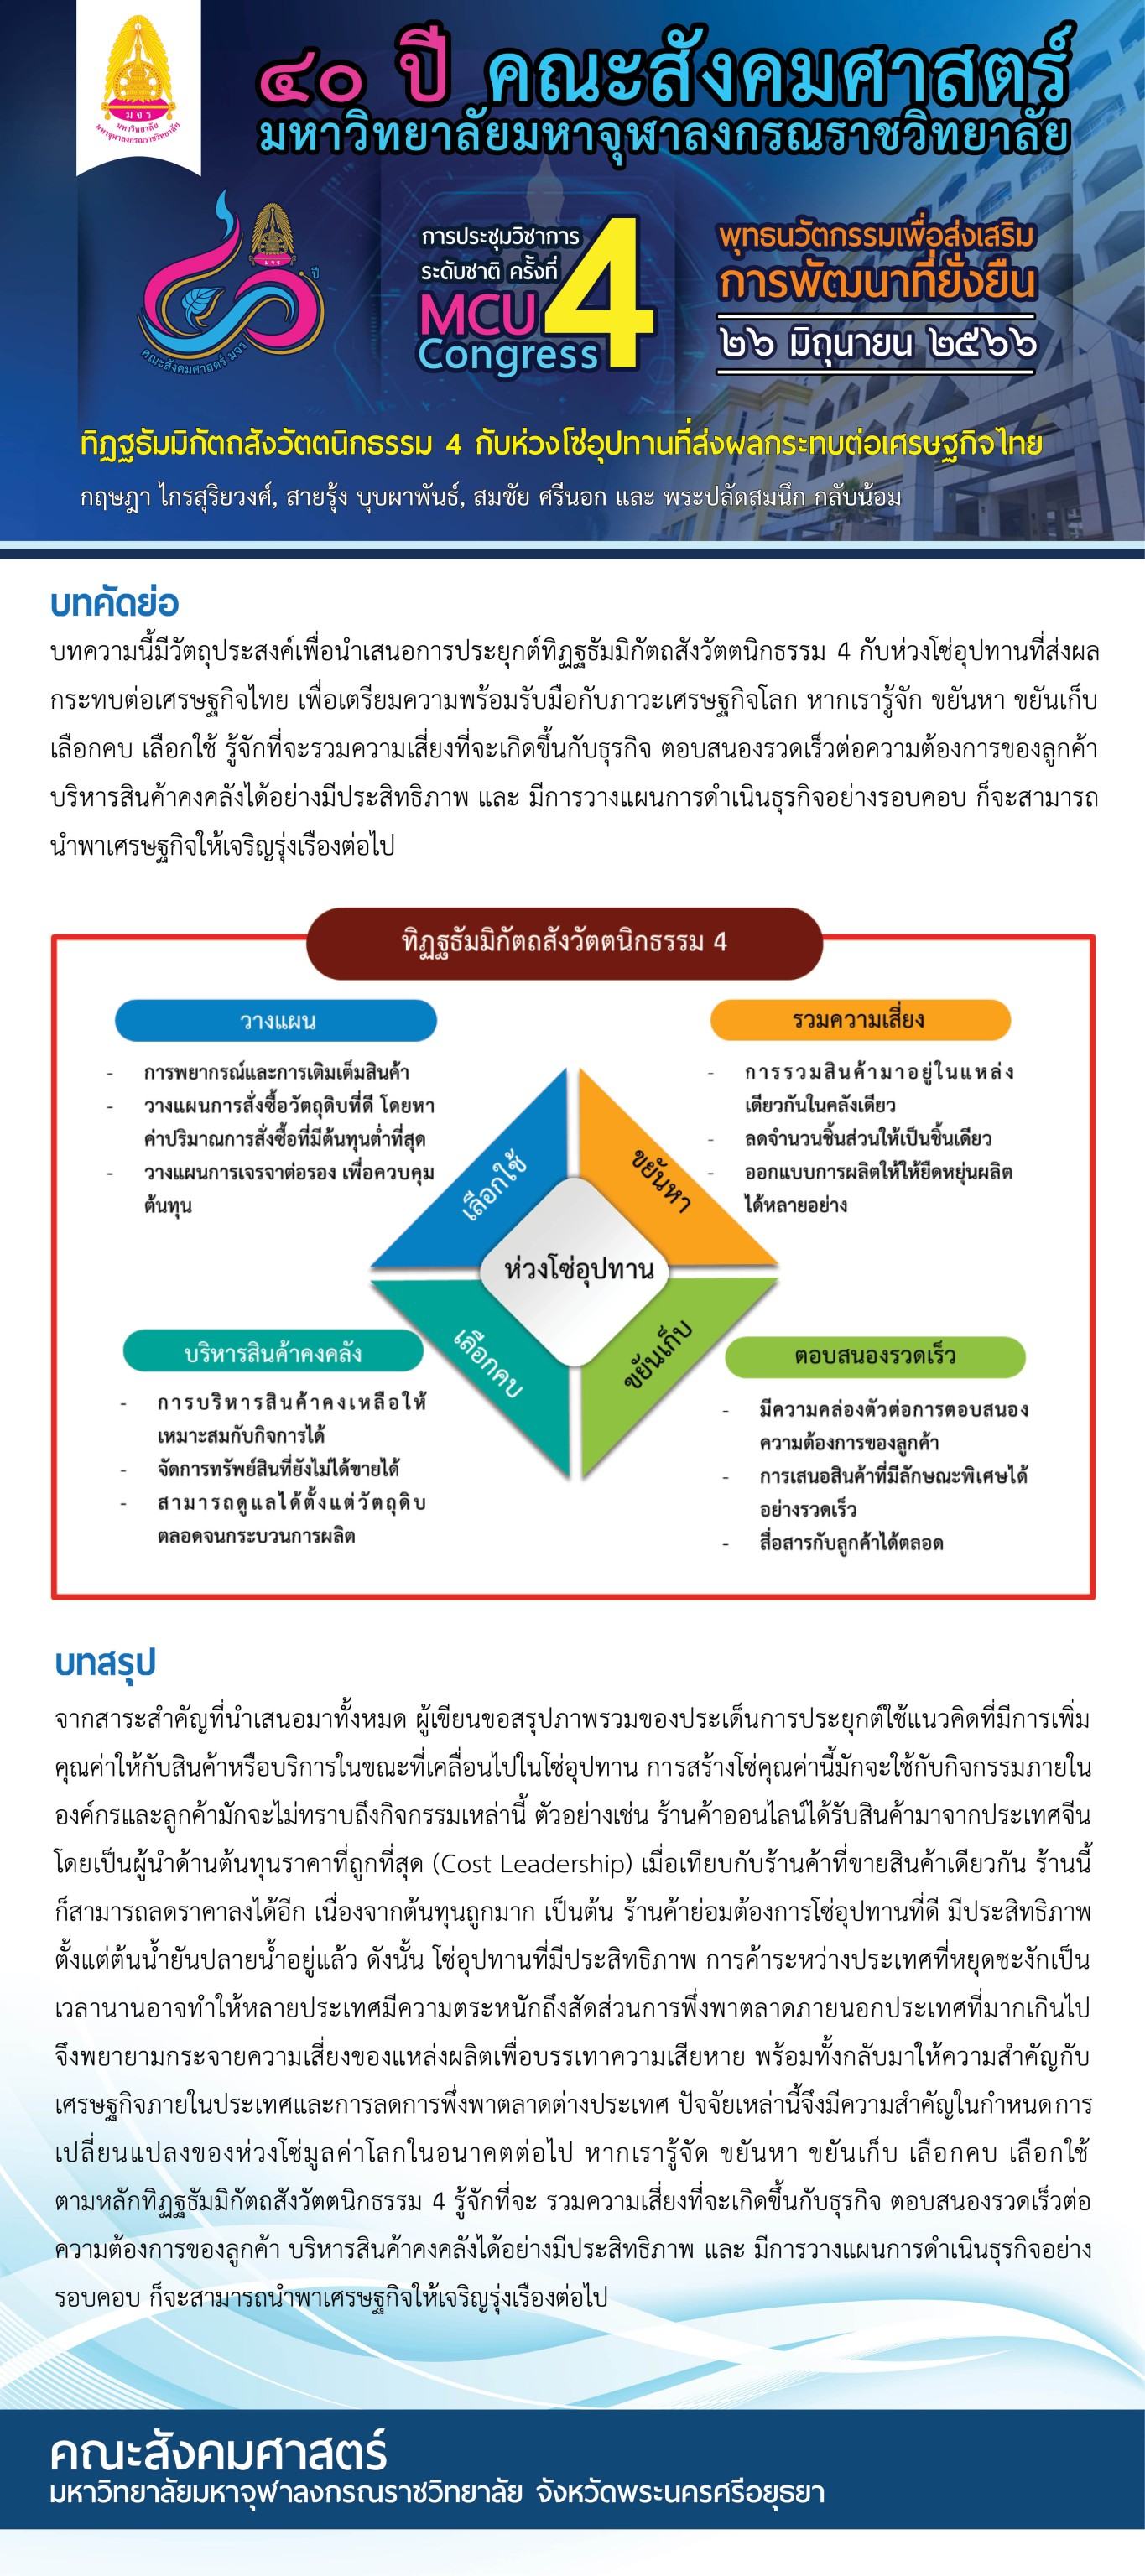 ทิฏฐธัมมิกัตถสังวัตตนิกธรรม 4 กับห่วงโซ่อุปทานที่ส่งผลกระทบต่อเศรษฐกิจไทย